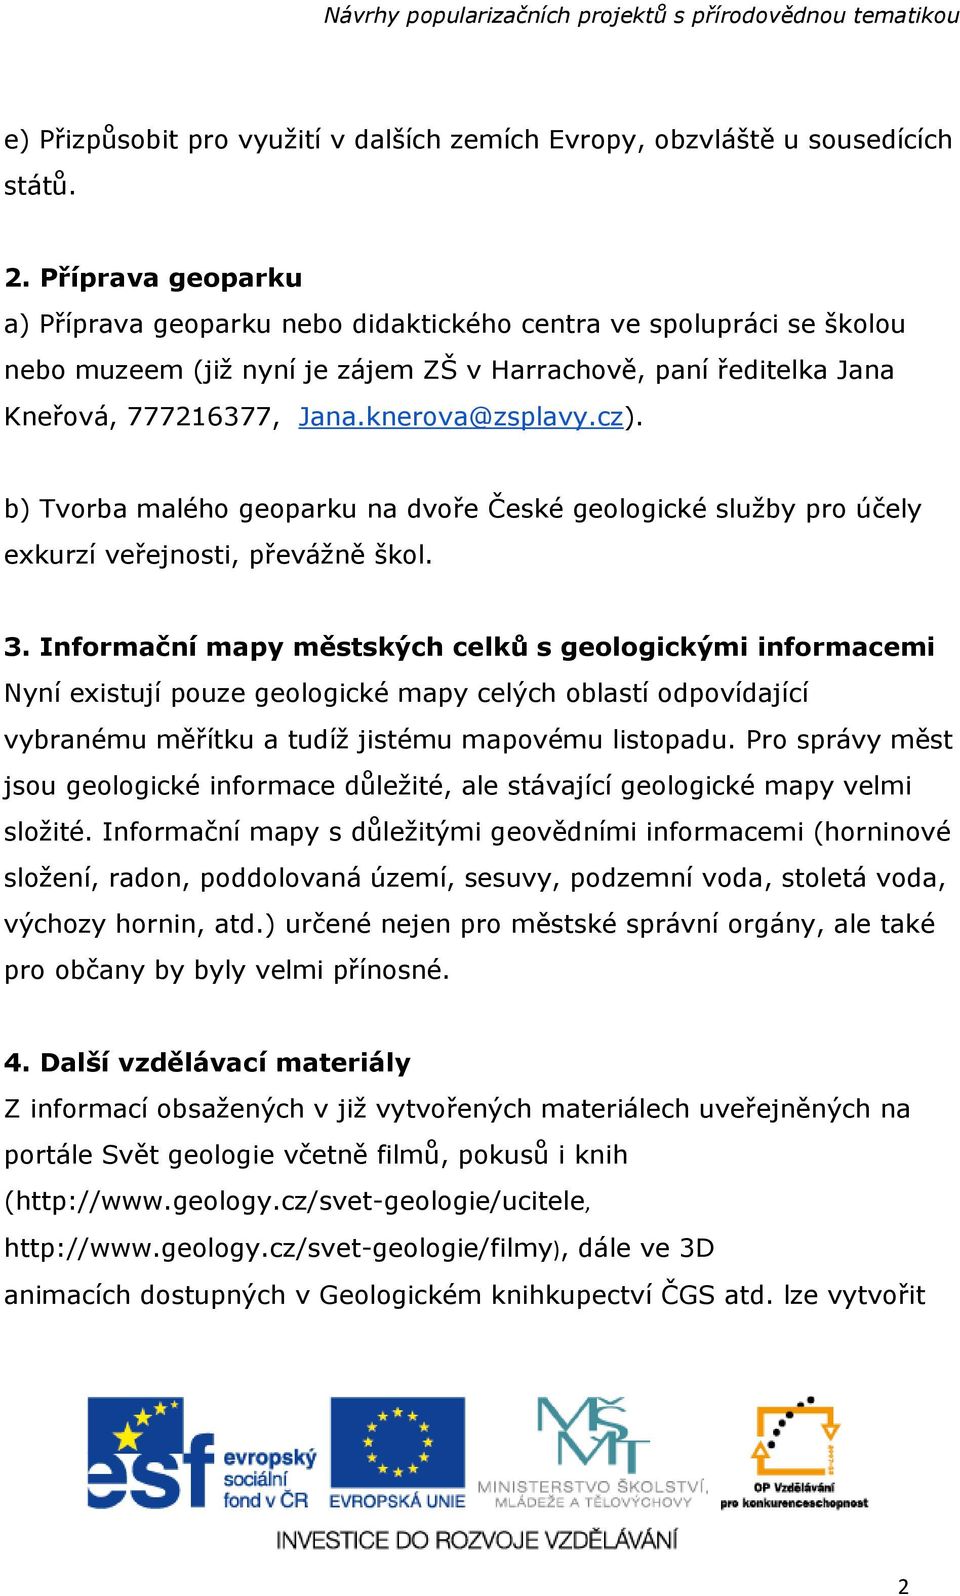 cz). b) Tvorba malého geoparku na dvoře České geologické služby pro účely exkurzí veřejnosti, převážně škol. 3.